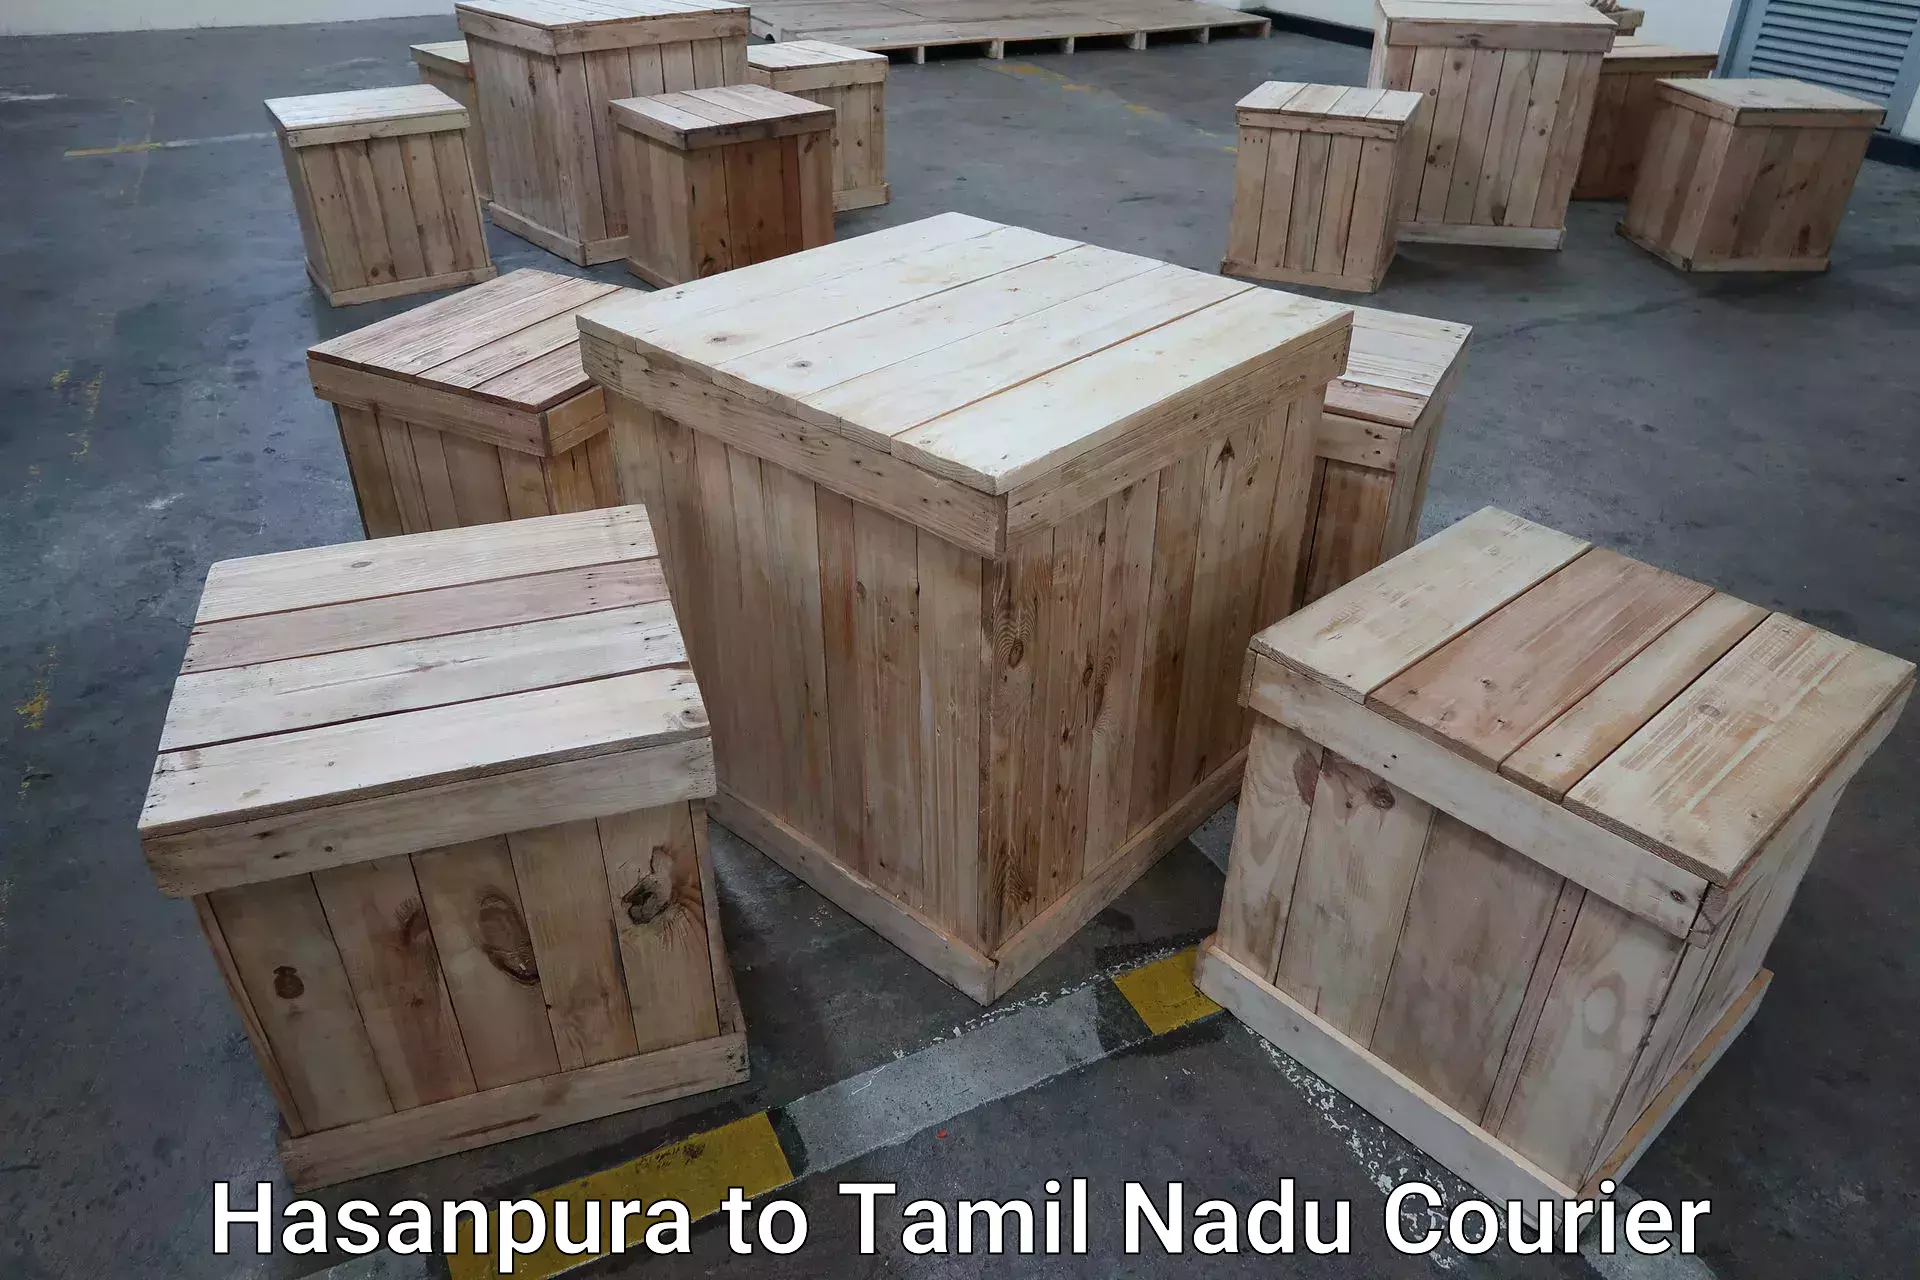 Urgent luggage shipment Hasanpura to Coimbatore